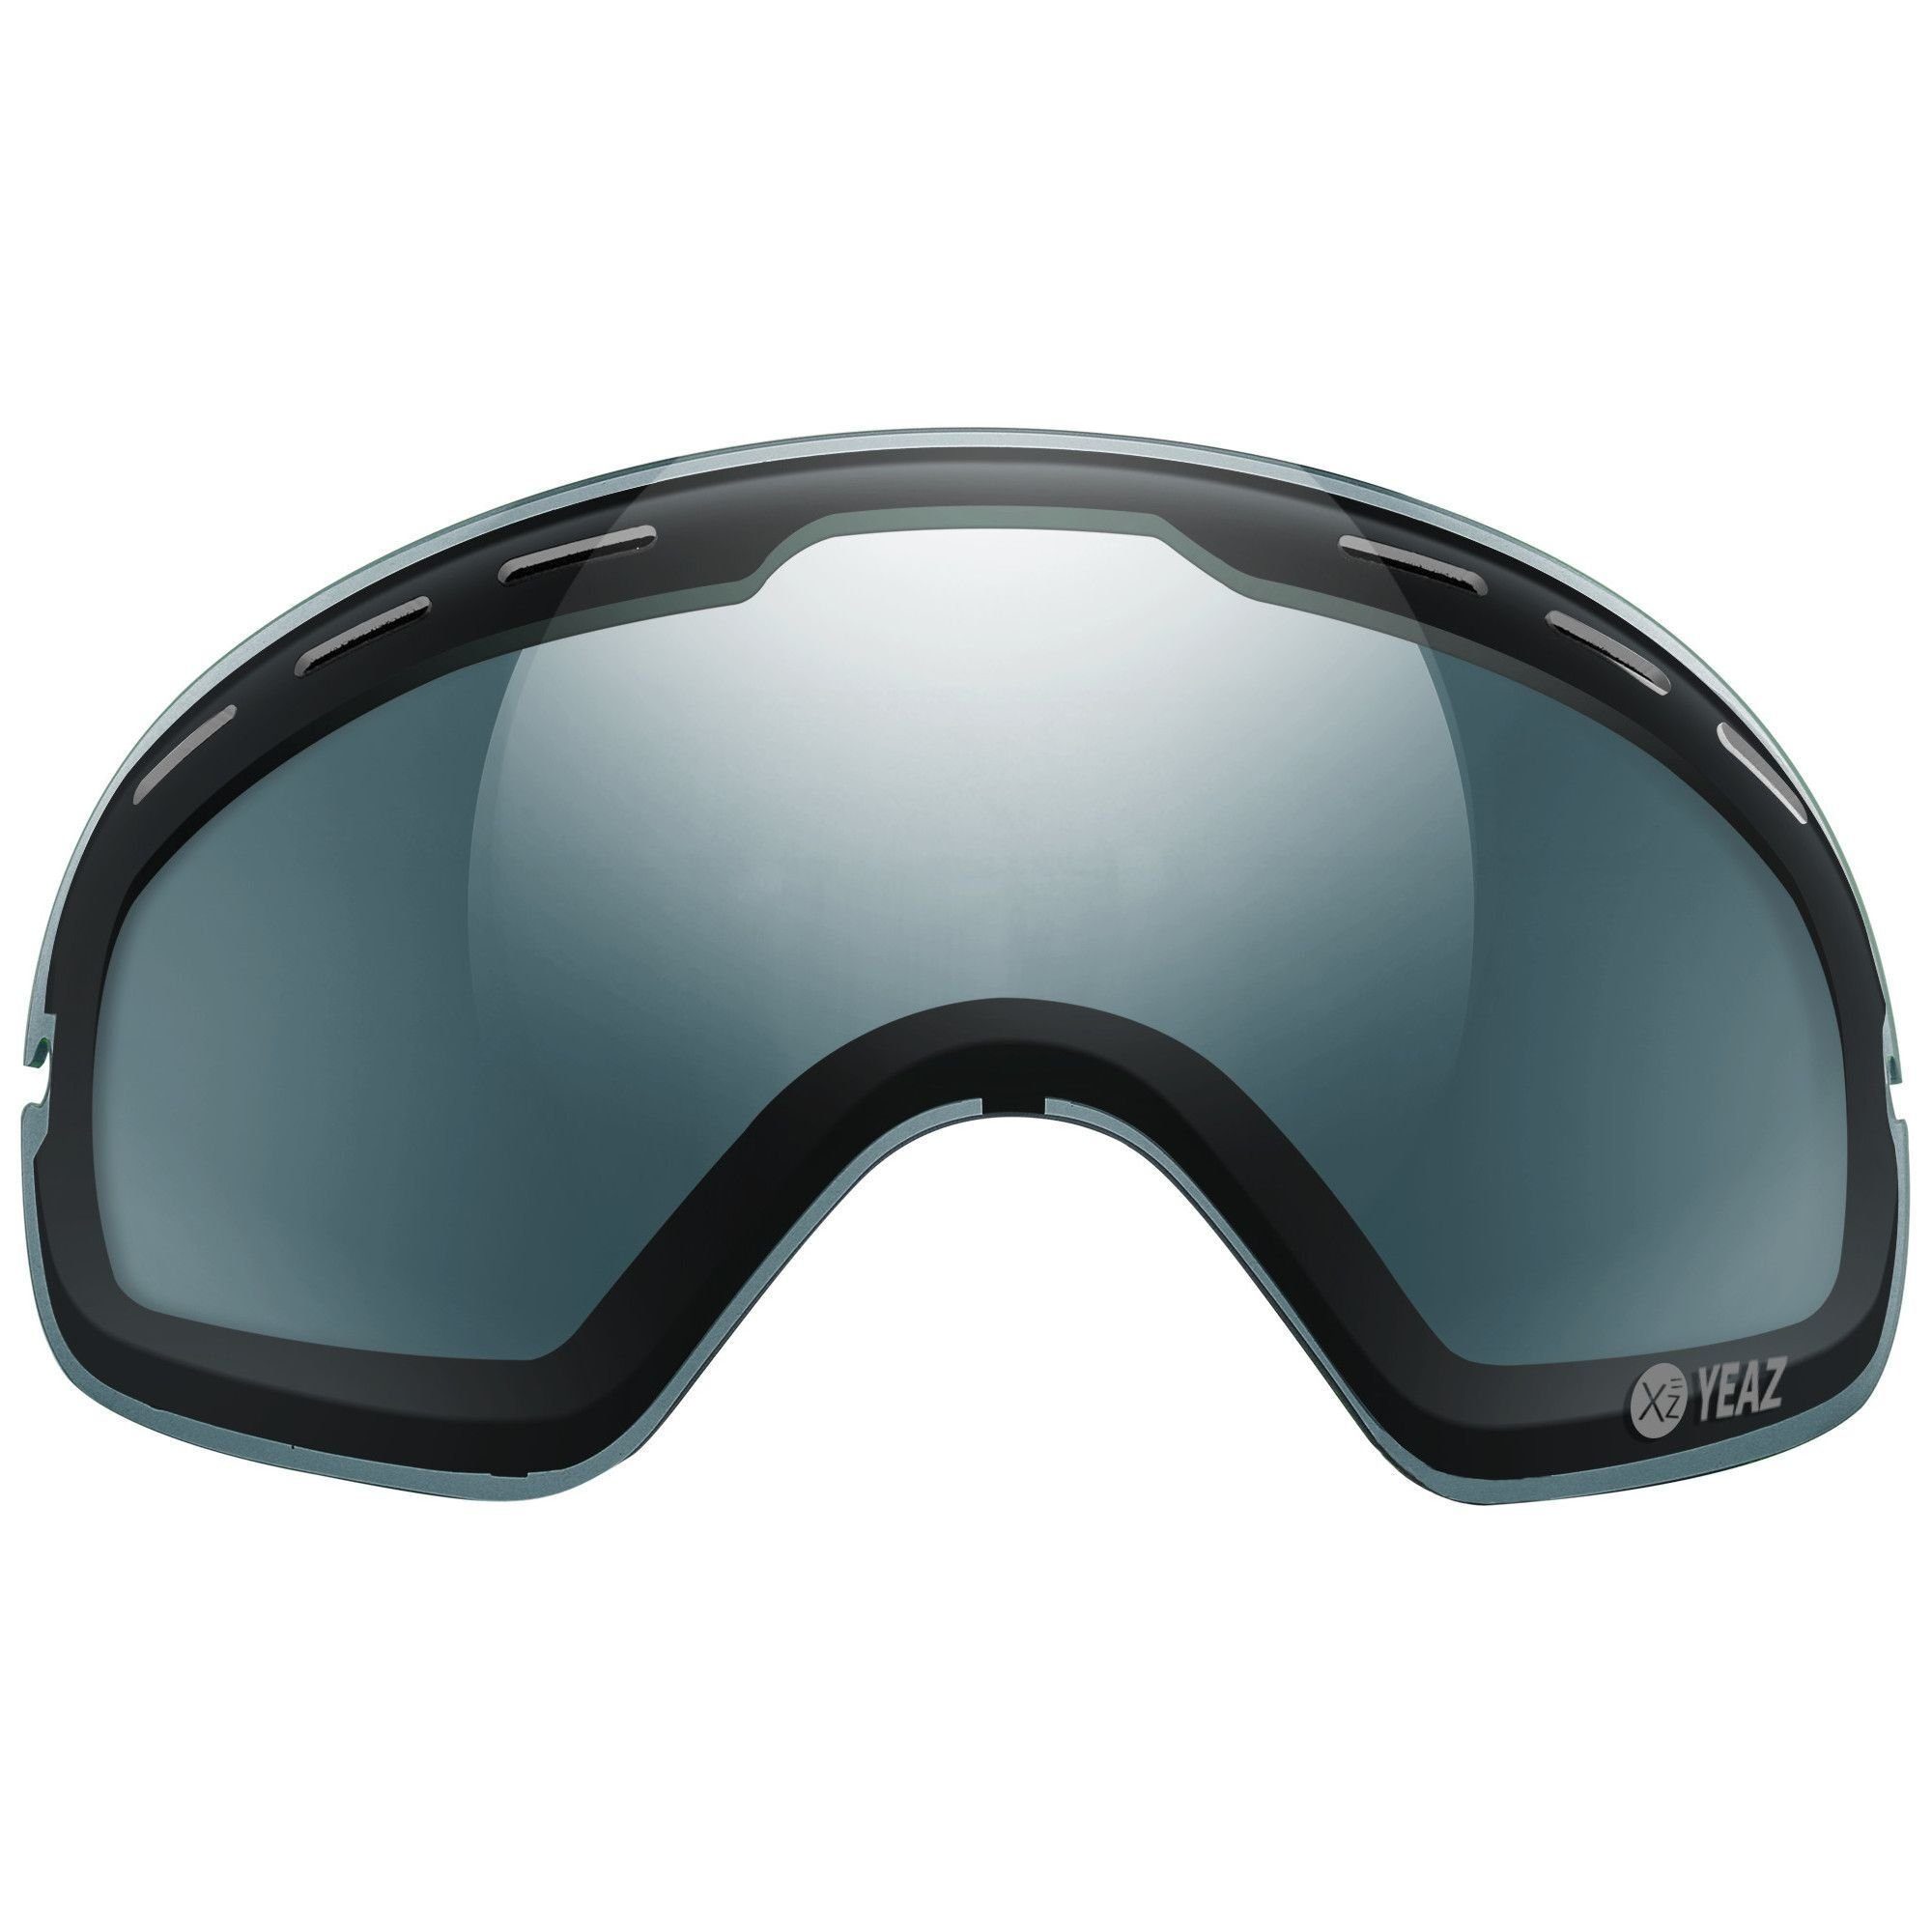 YEAZ Wechselglas Skibrille für XTRM-SUMMIT mit Skibrille mit Rahmen rahmen, XTRM-SUMMIT polarisiertes wechselglas,